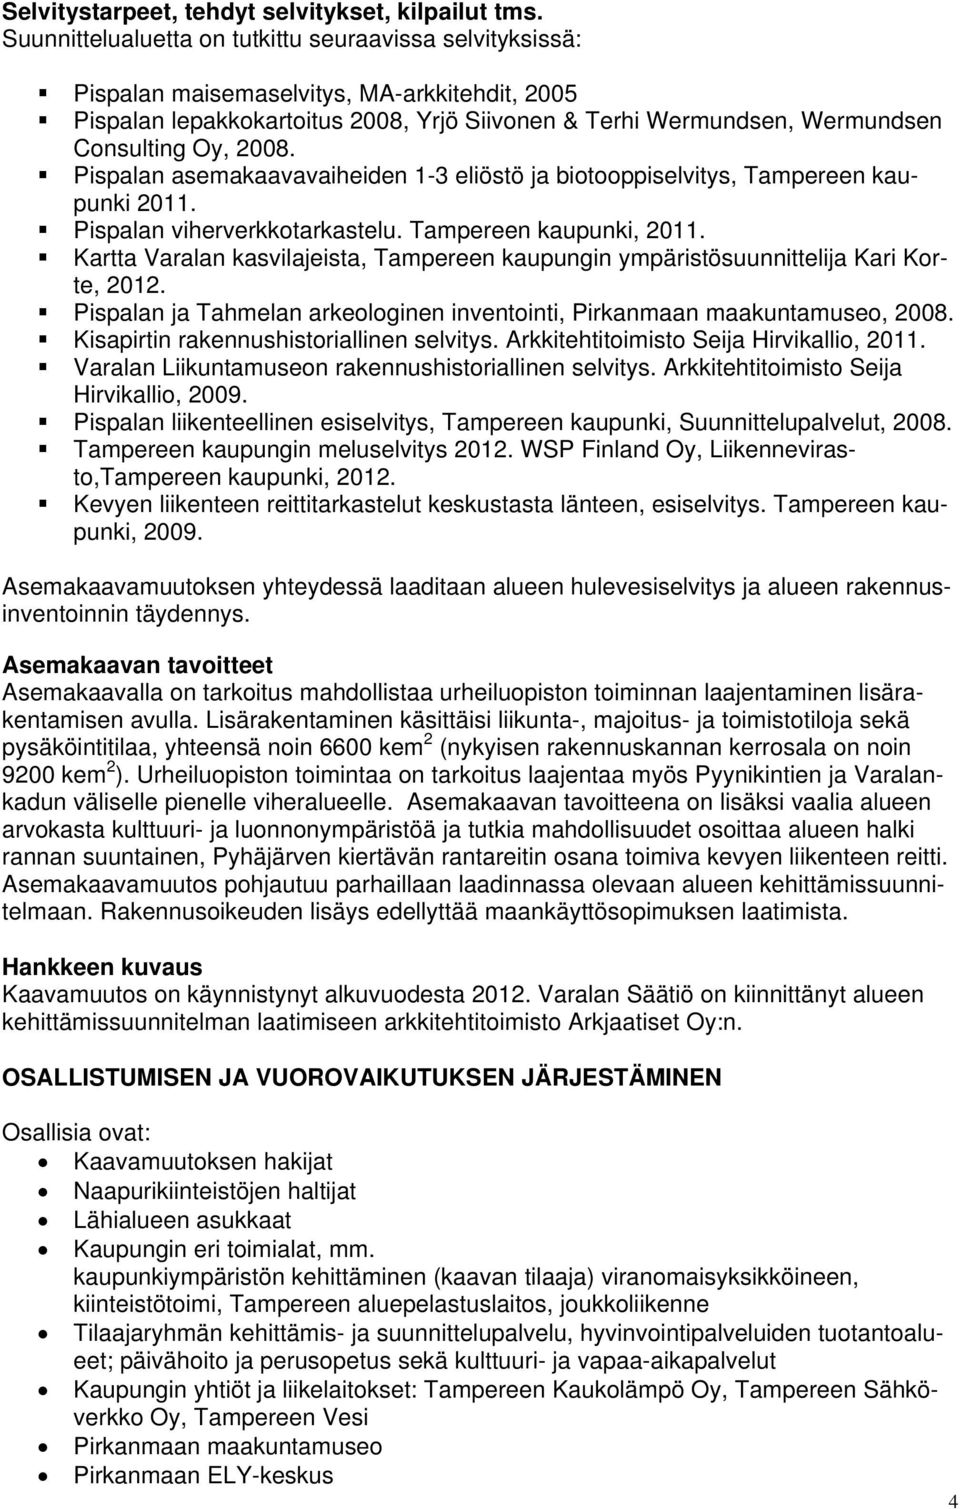 2008. Pispalan asemakaavavaiheiden 1-3 eliöstö ja biotooppiselvitys, Tampereen kaupunki 2011. Pispalan viherverkkotarkastelu. Tampereen kaupunki, 2011.